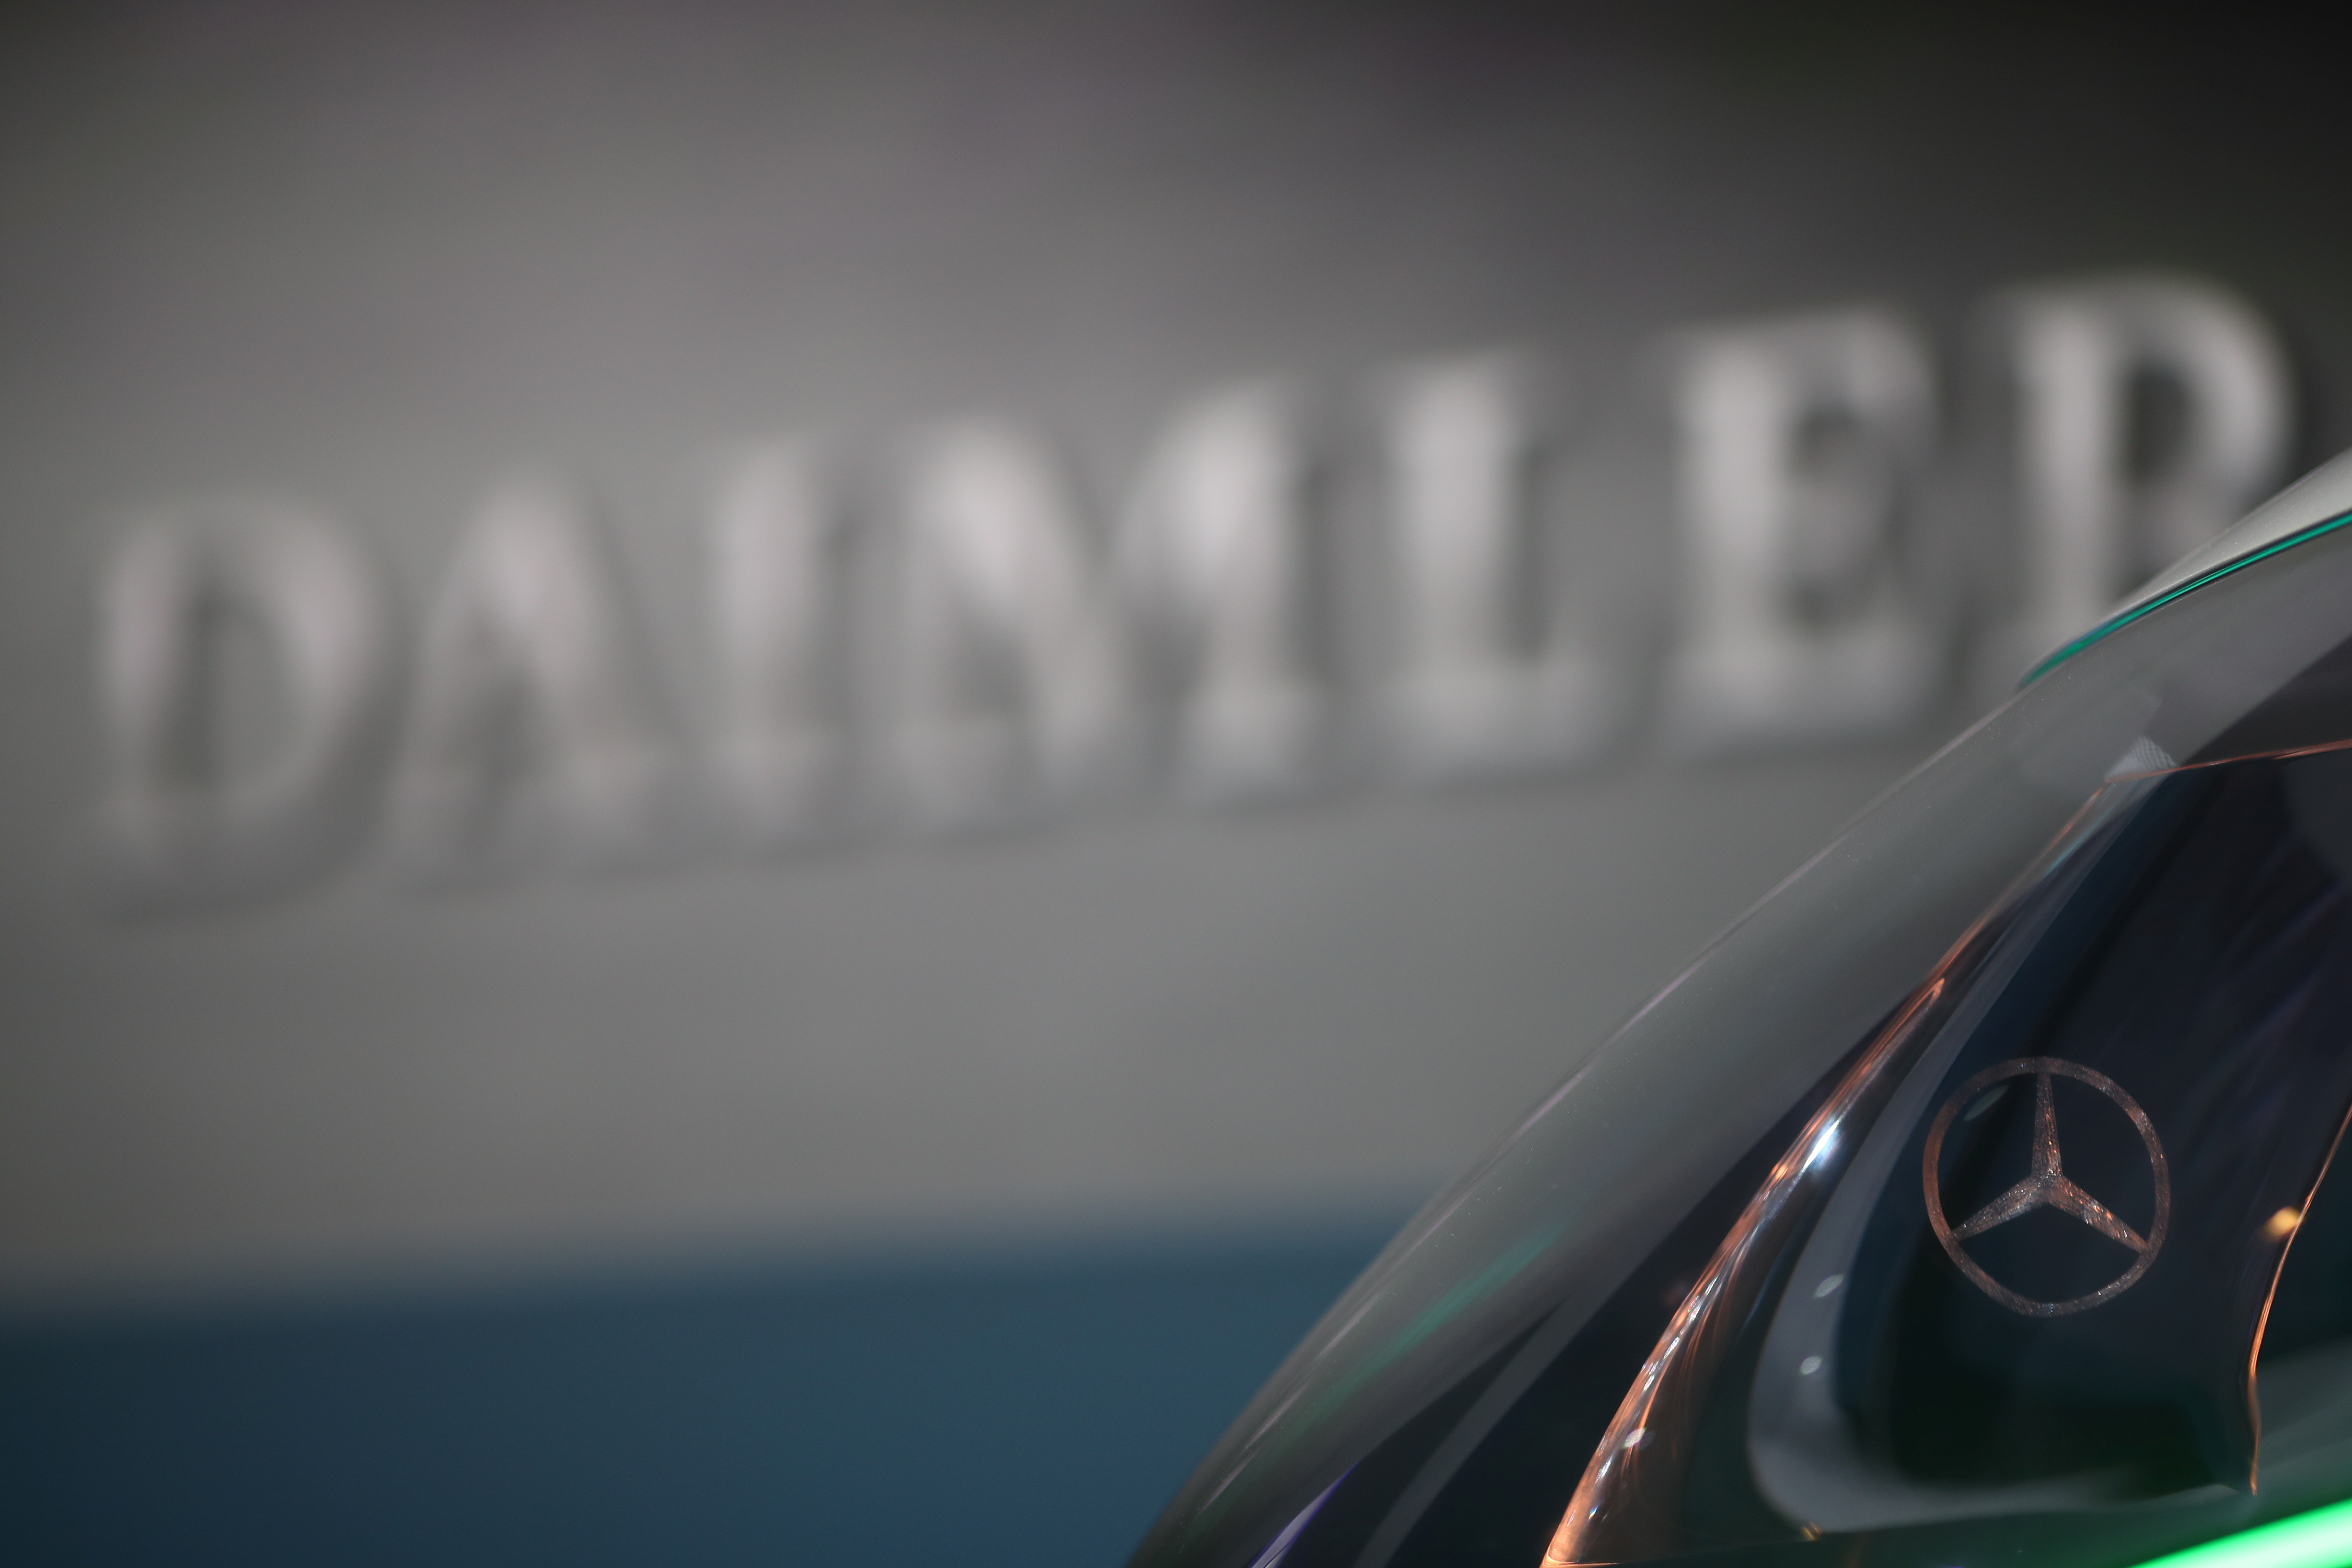 Daimler AG's annual news conference in Stuttgart